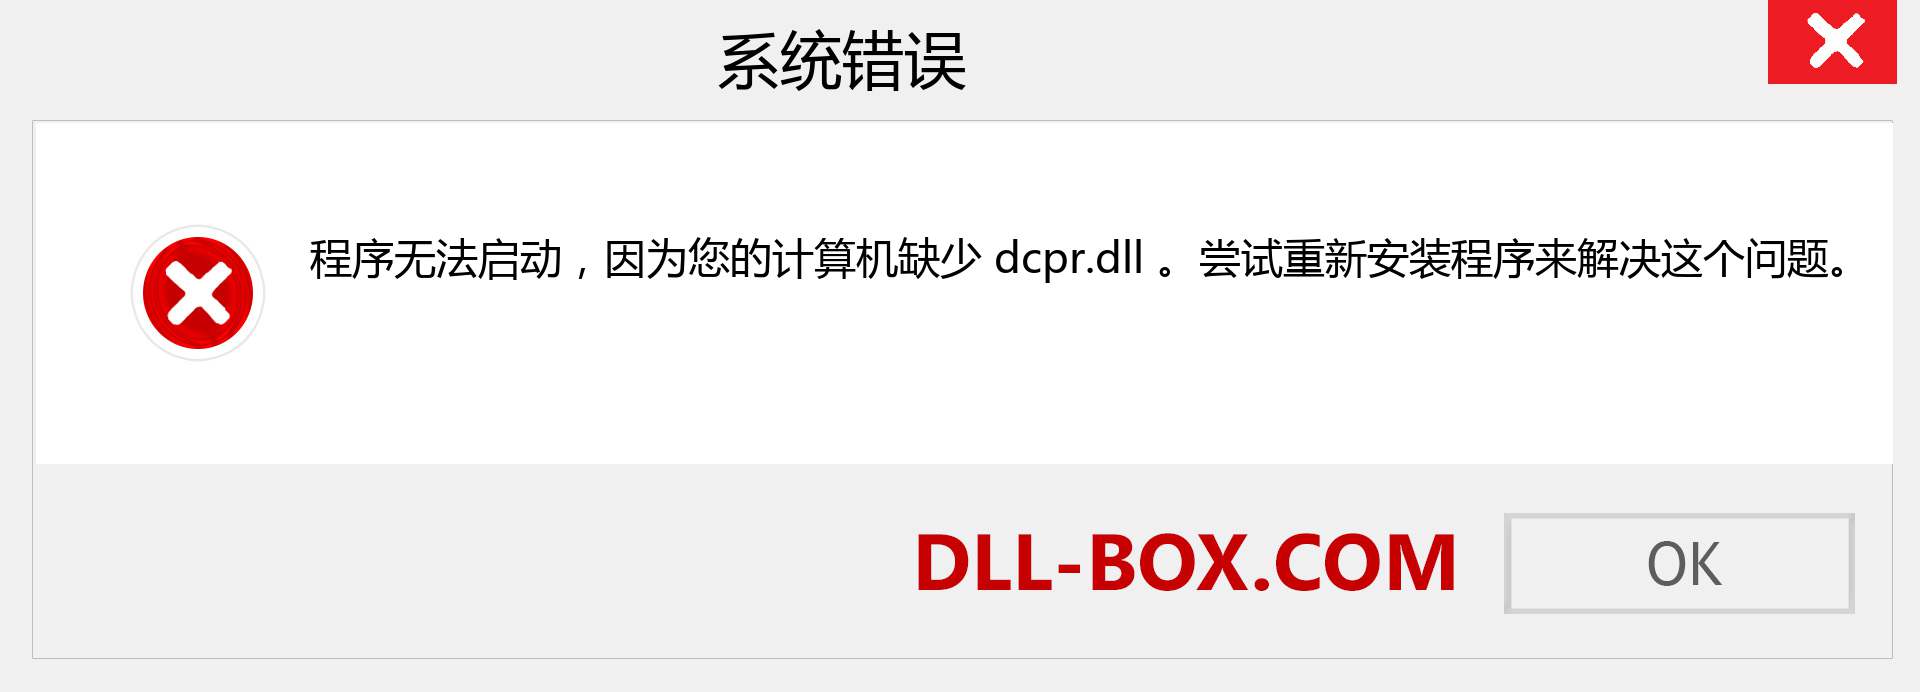 dcpr.dll 文件丢失？。 适用于 Windows 7、8、10 的下载 - 修复 Windows、照片、图像上的 dcpr dll 丢失错误